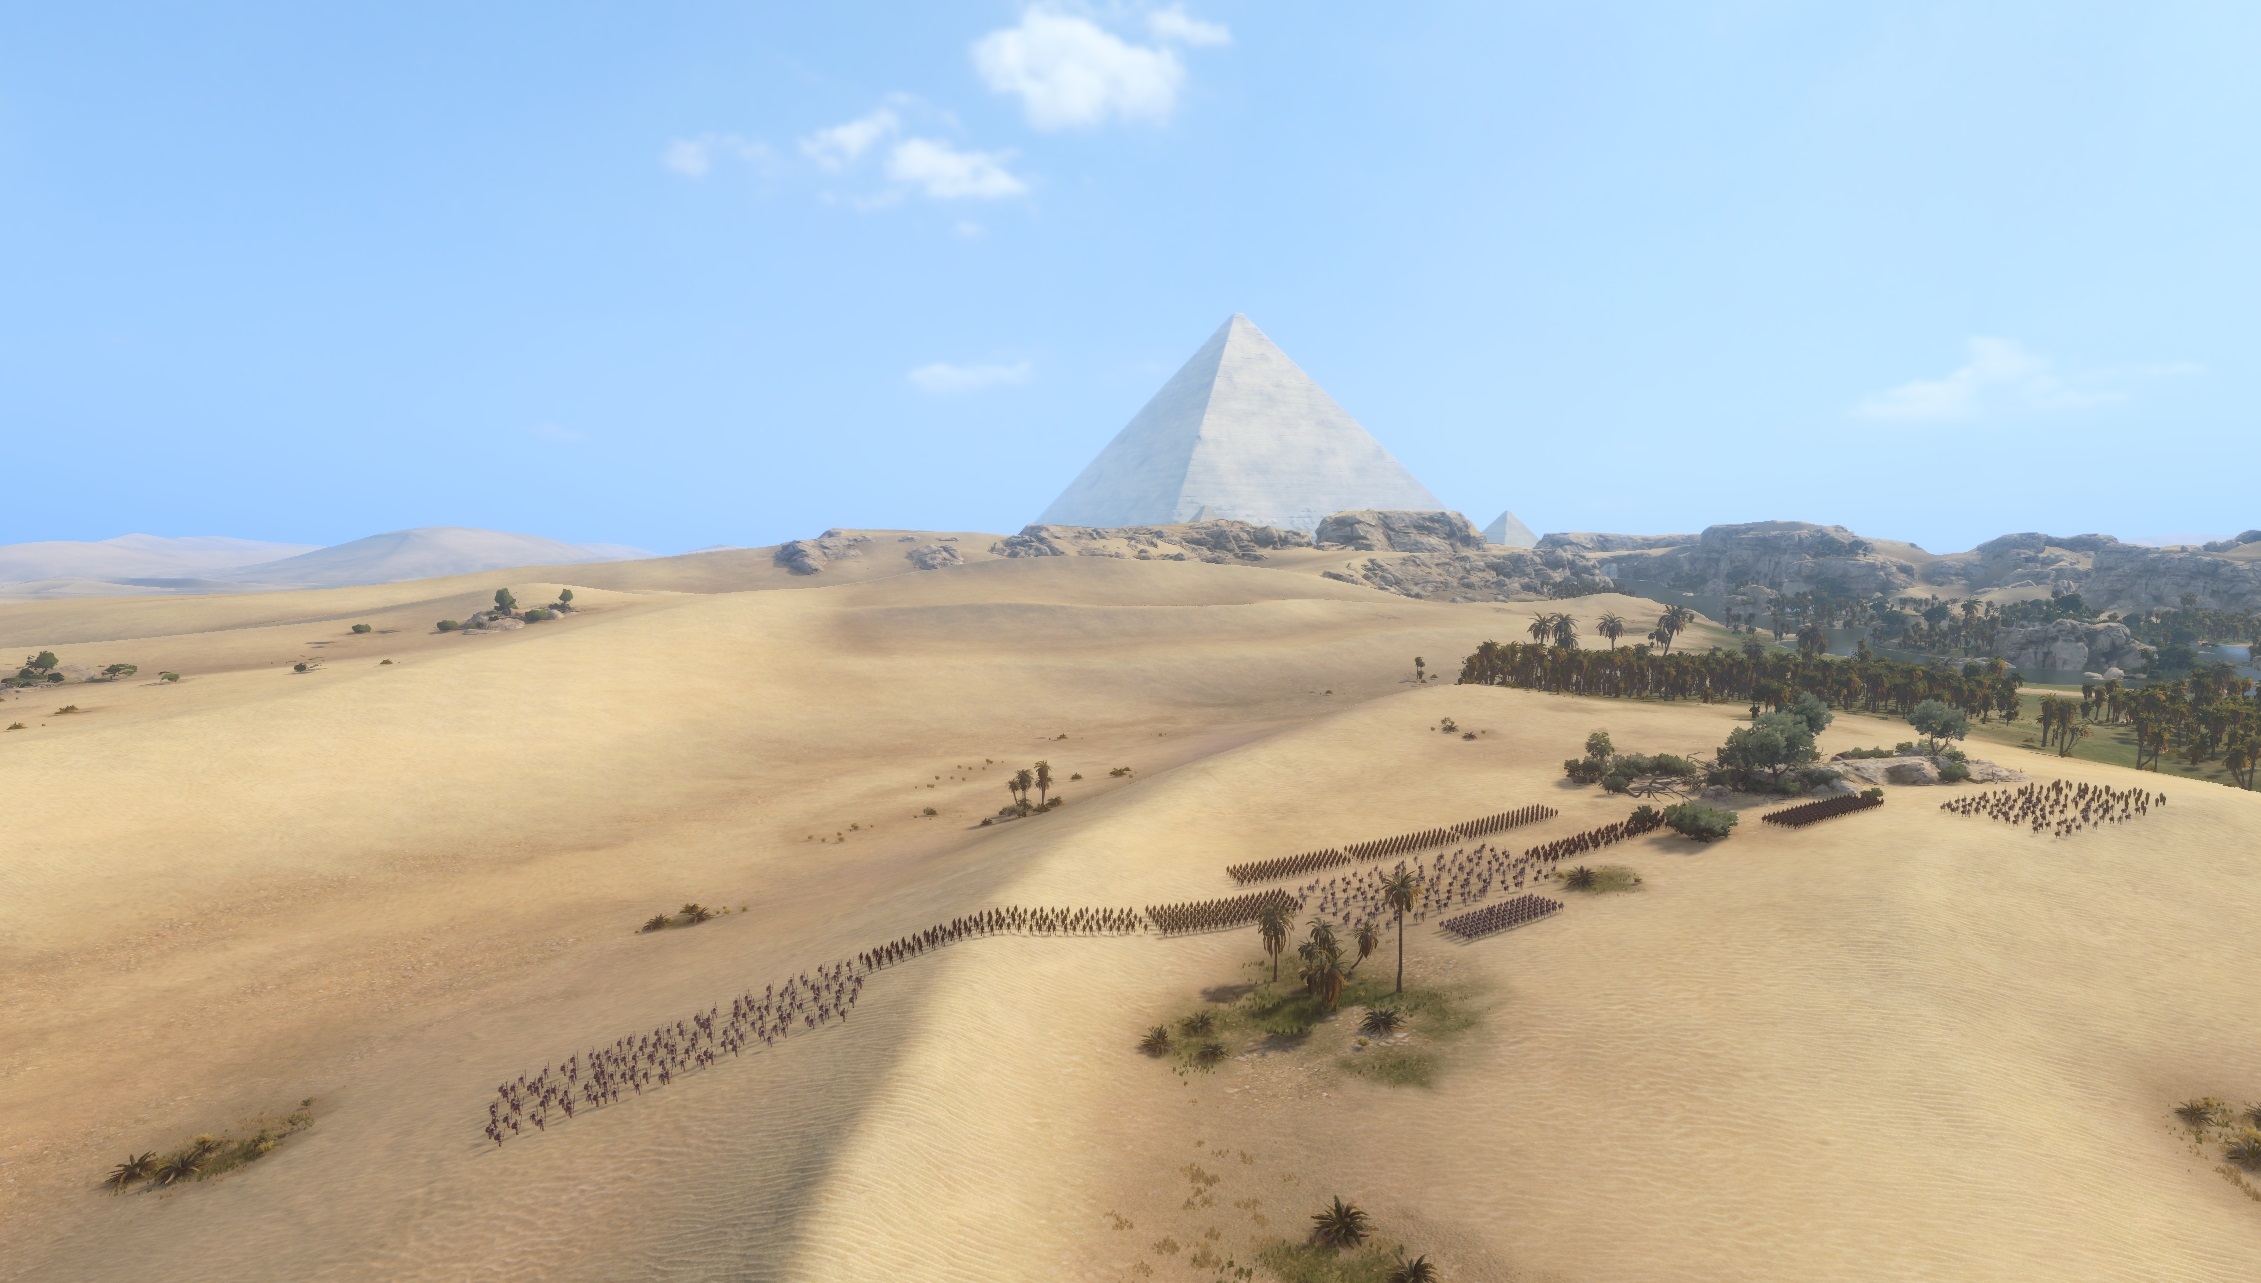 A battle near a pyramid in Total War: Pharaoh